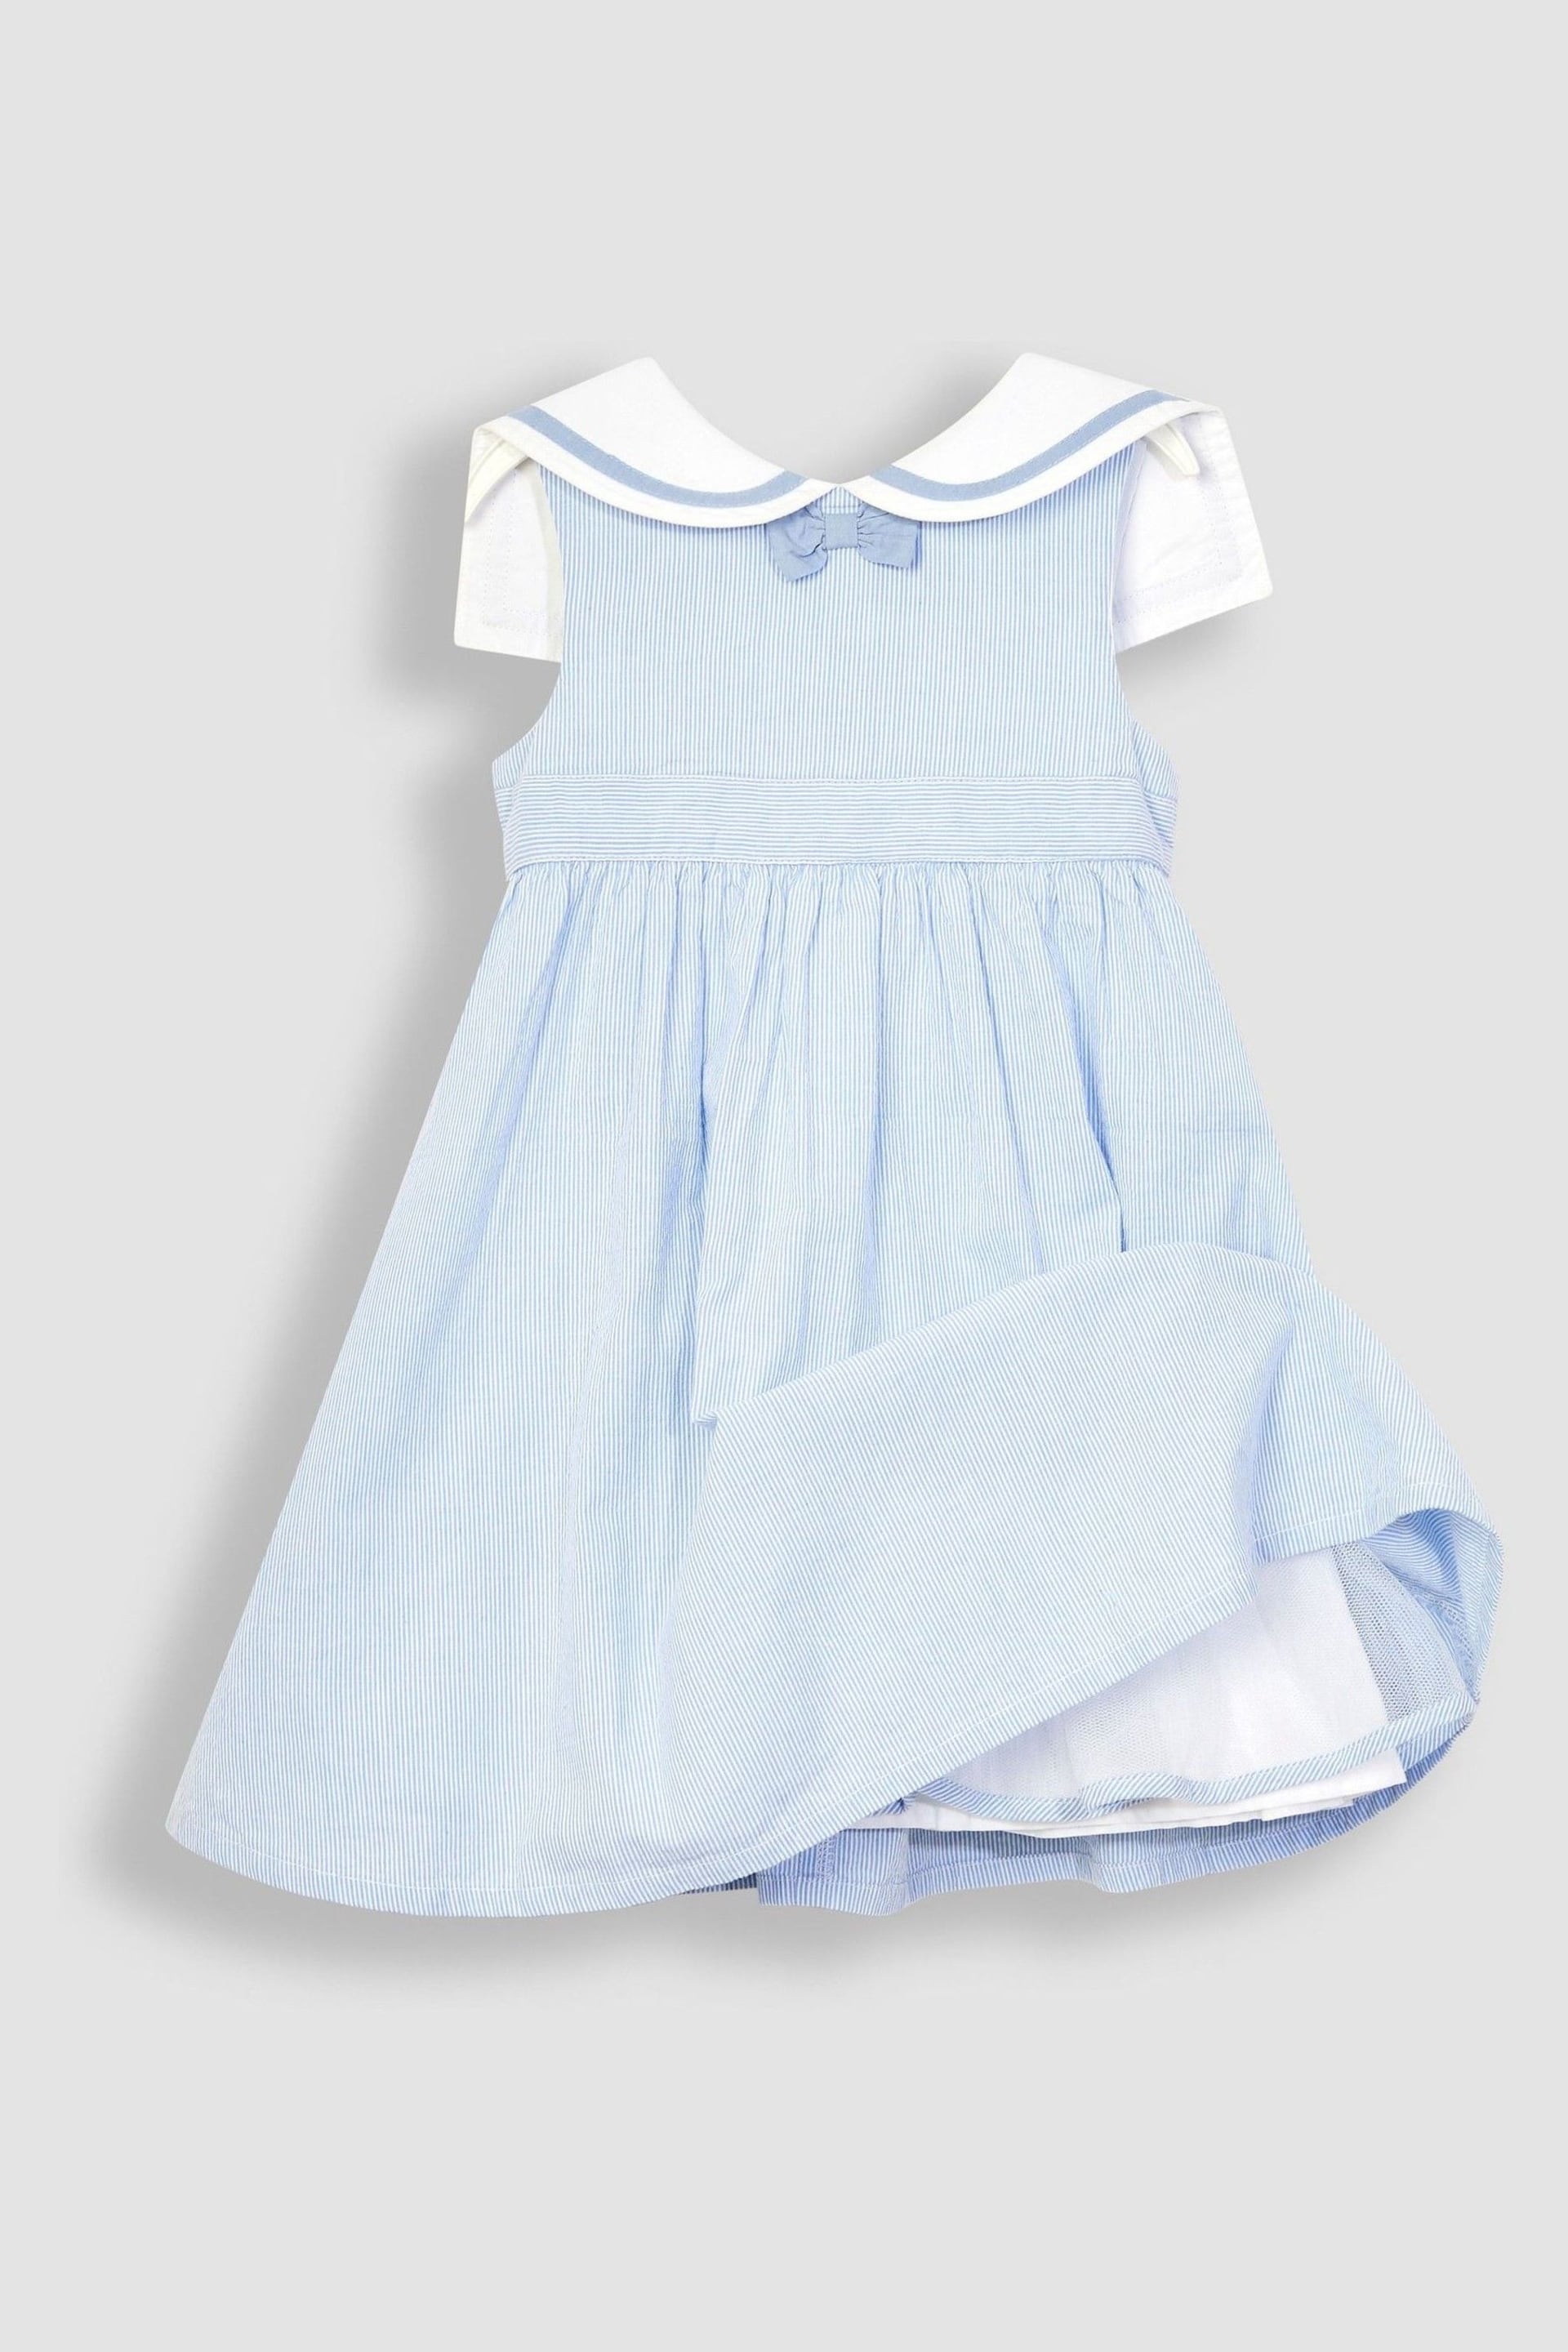 JoJo Maman Bébé Blue Sailor Party Dress - Image 4 of 6